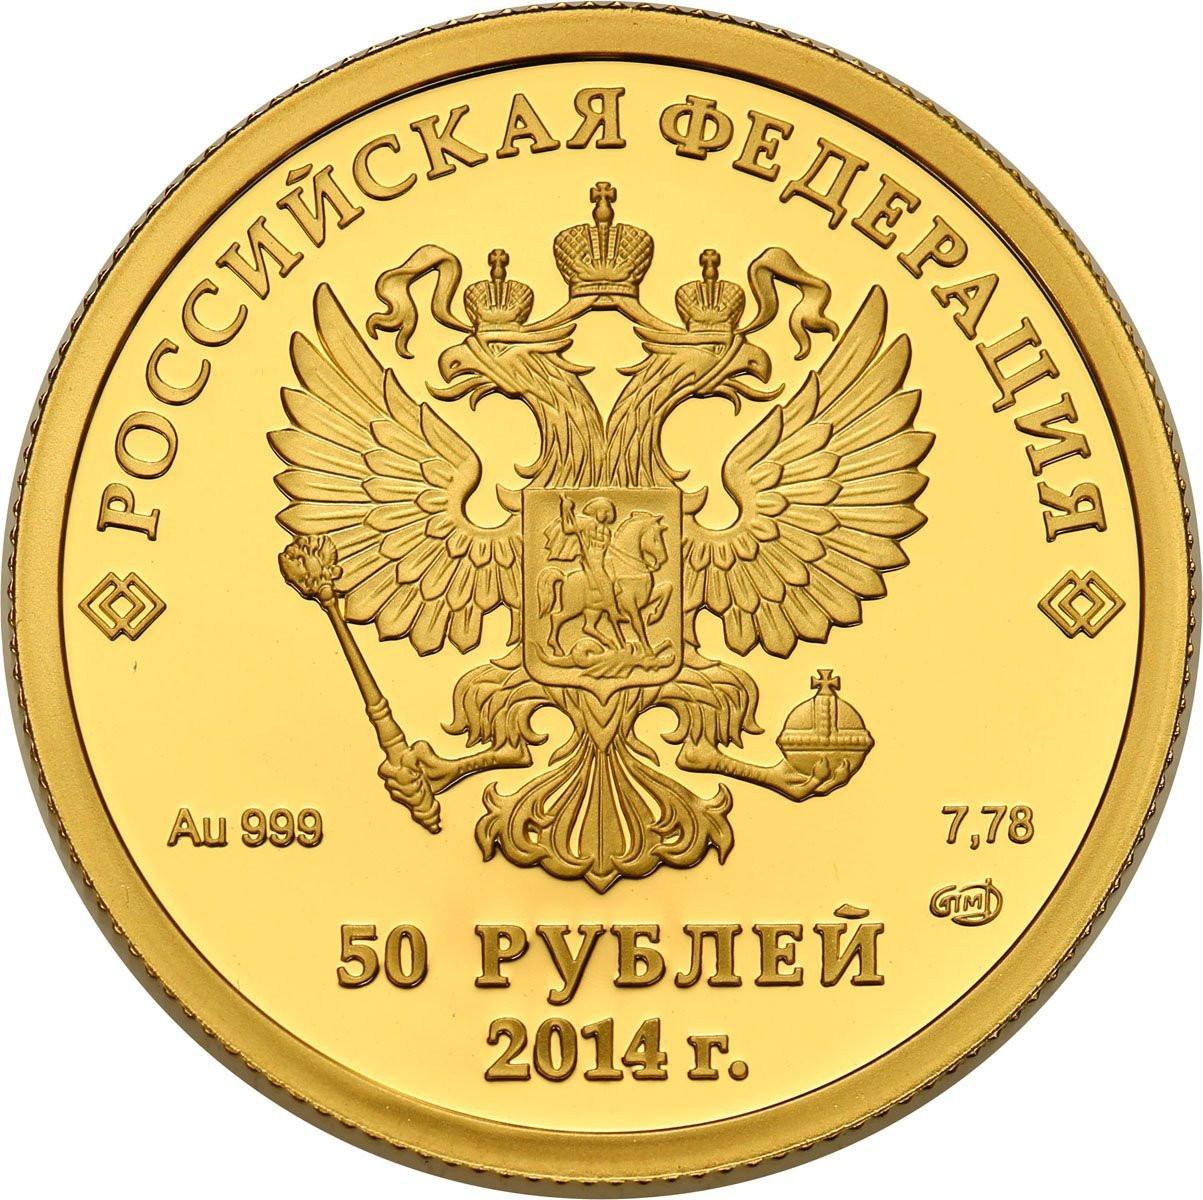 Rosja. 50 Rubli 2014 Olimpiada Soczi - zestaw 8 monet - 2 UNCJE złota